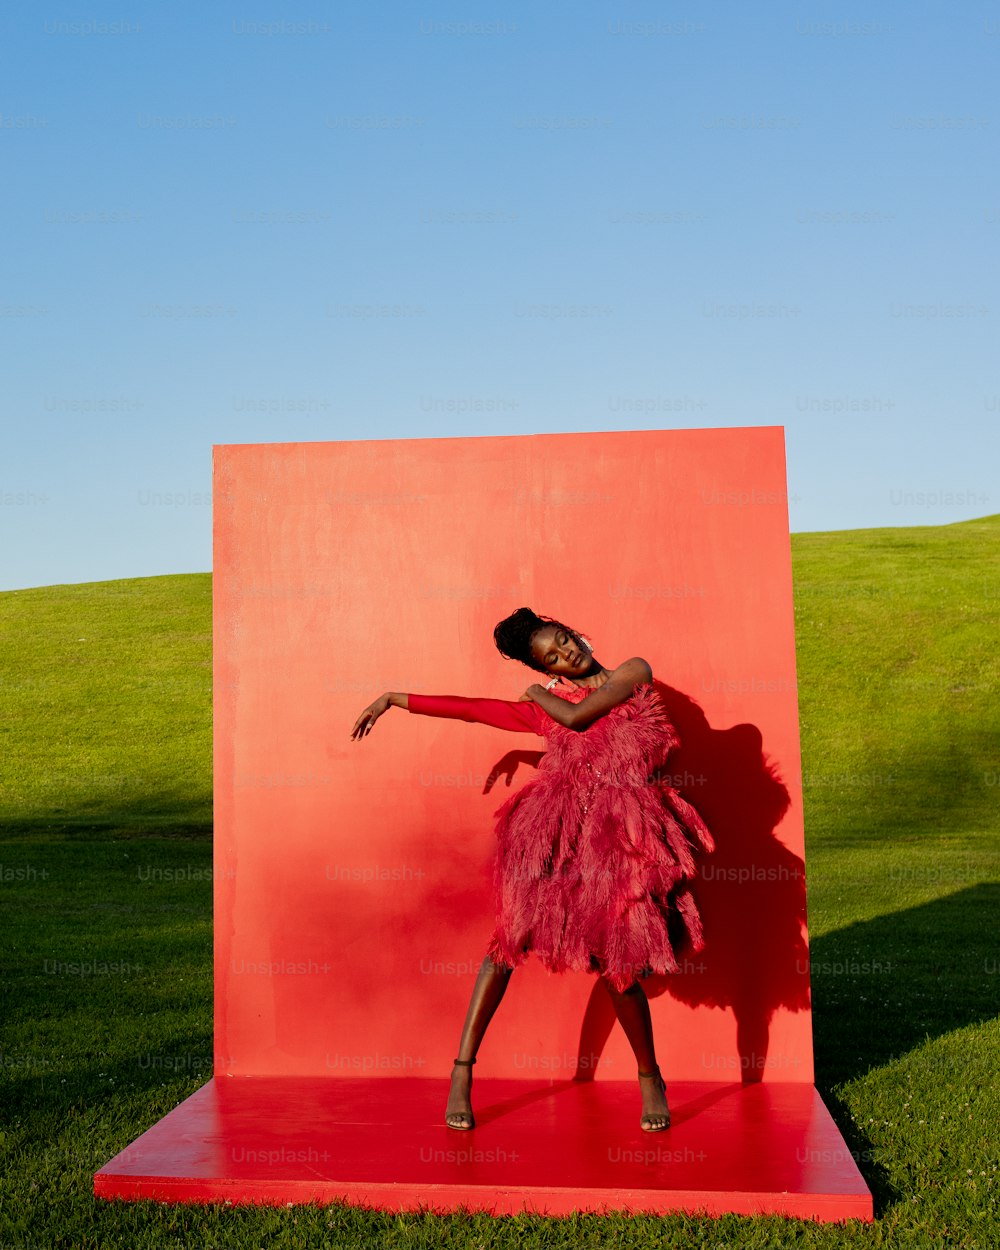 분홍색 드레스를 입은 여자가 빨간 조각상 앞에 서 있다